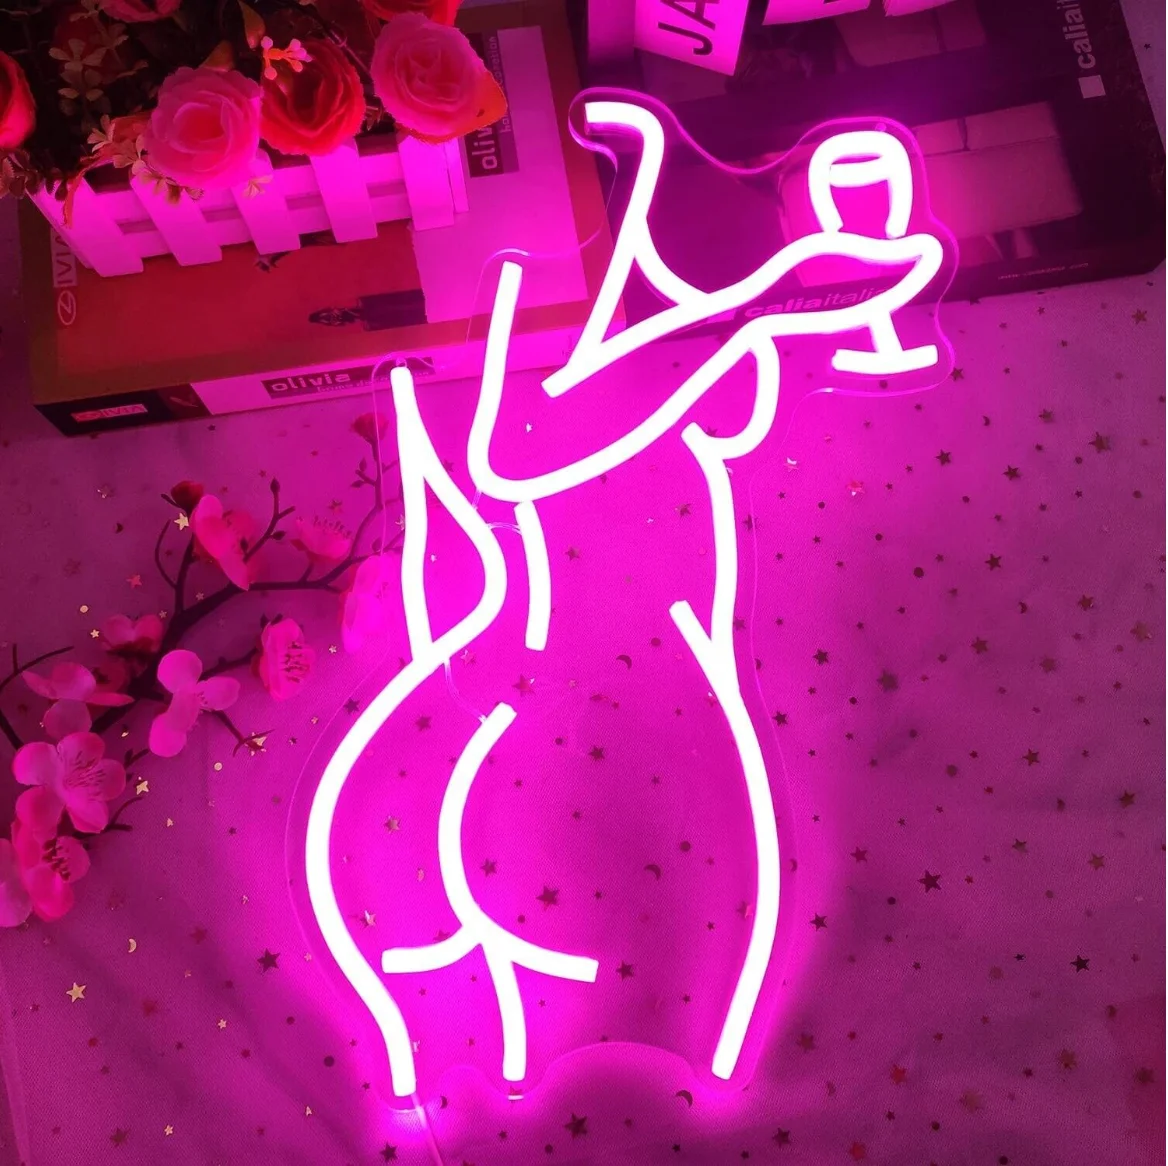 цена Ajoyferris Women's Back Neon Sign Adjustable LED Women's Neon Sign Neon Pink Sign Women's